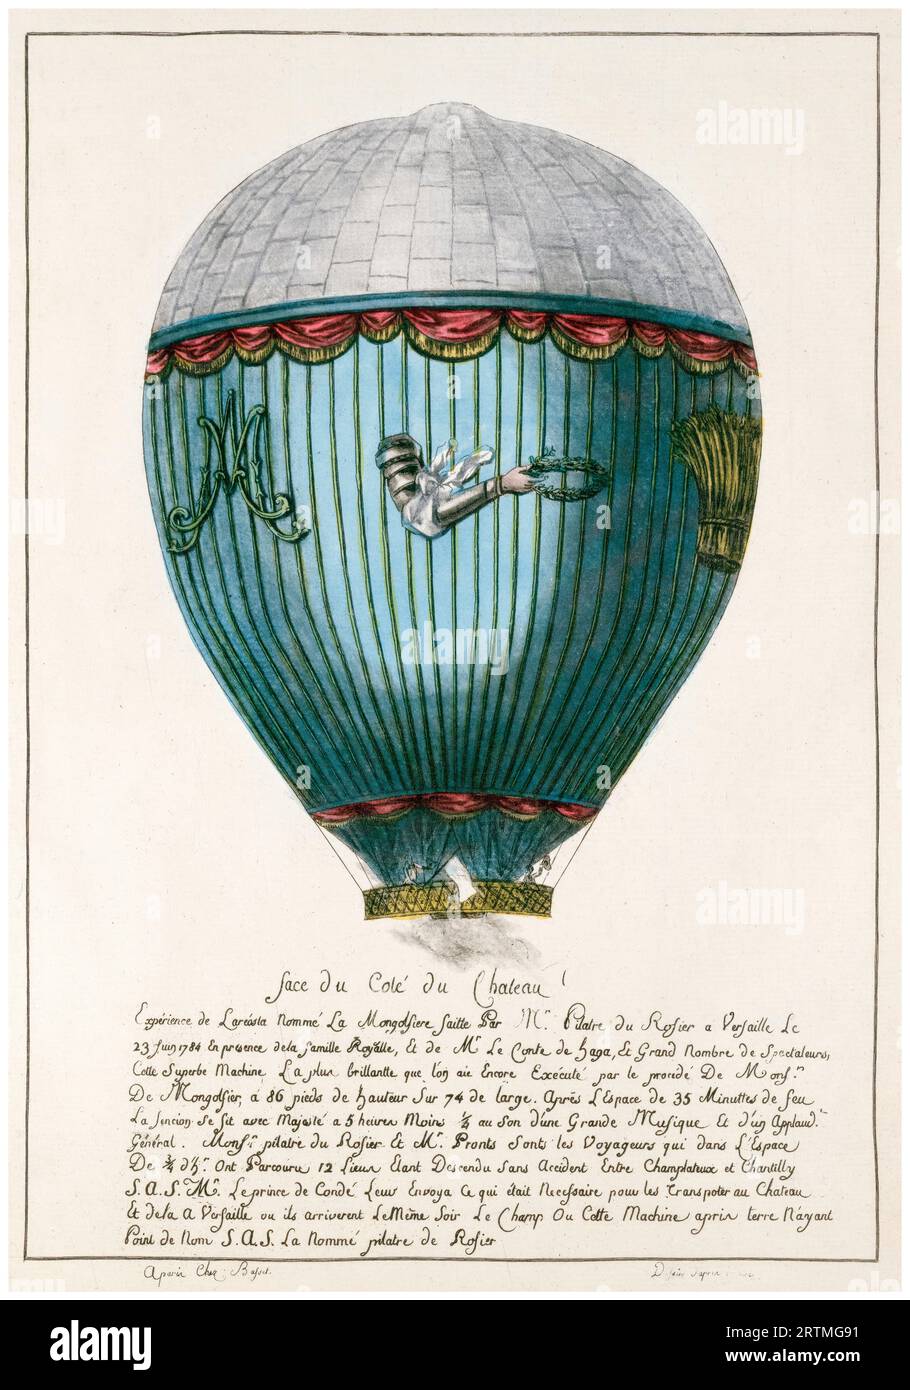 Der Marie-Antoinette-Heißluftballon von Jean-Francois Pilâtre de Rozier (1754–1785) auf dem Schloss von Versailles am 23. Juni 1784, handkolorierter Kupferstich um 1784 Stockfoto